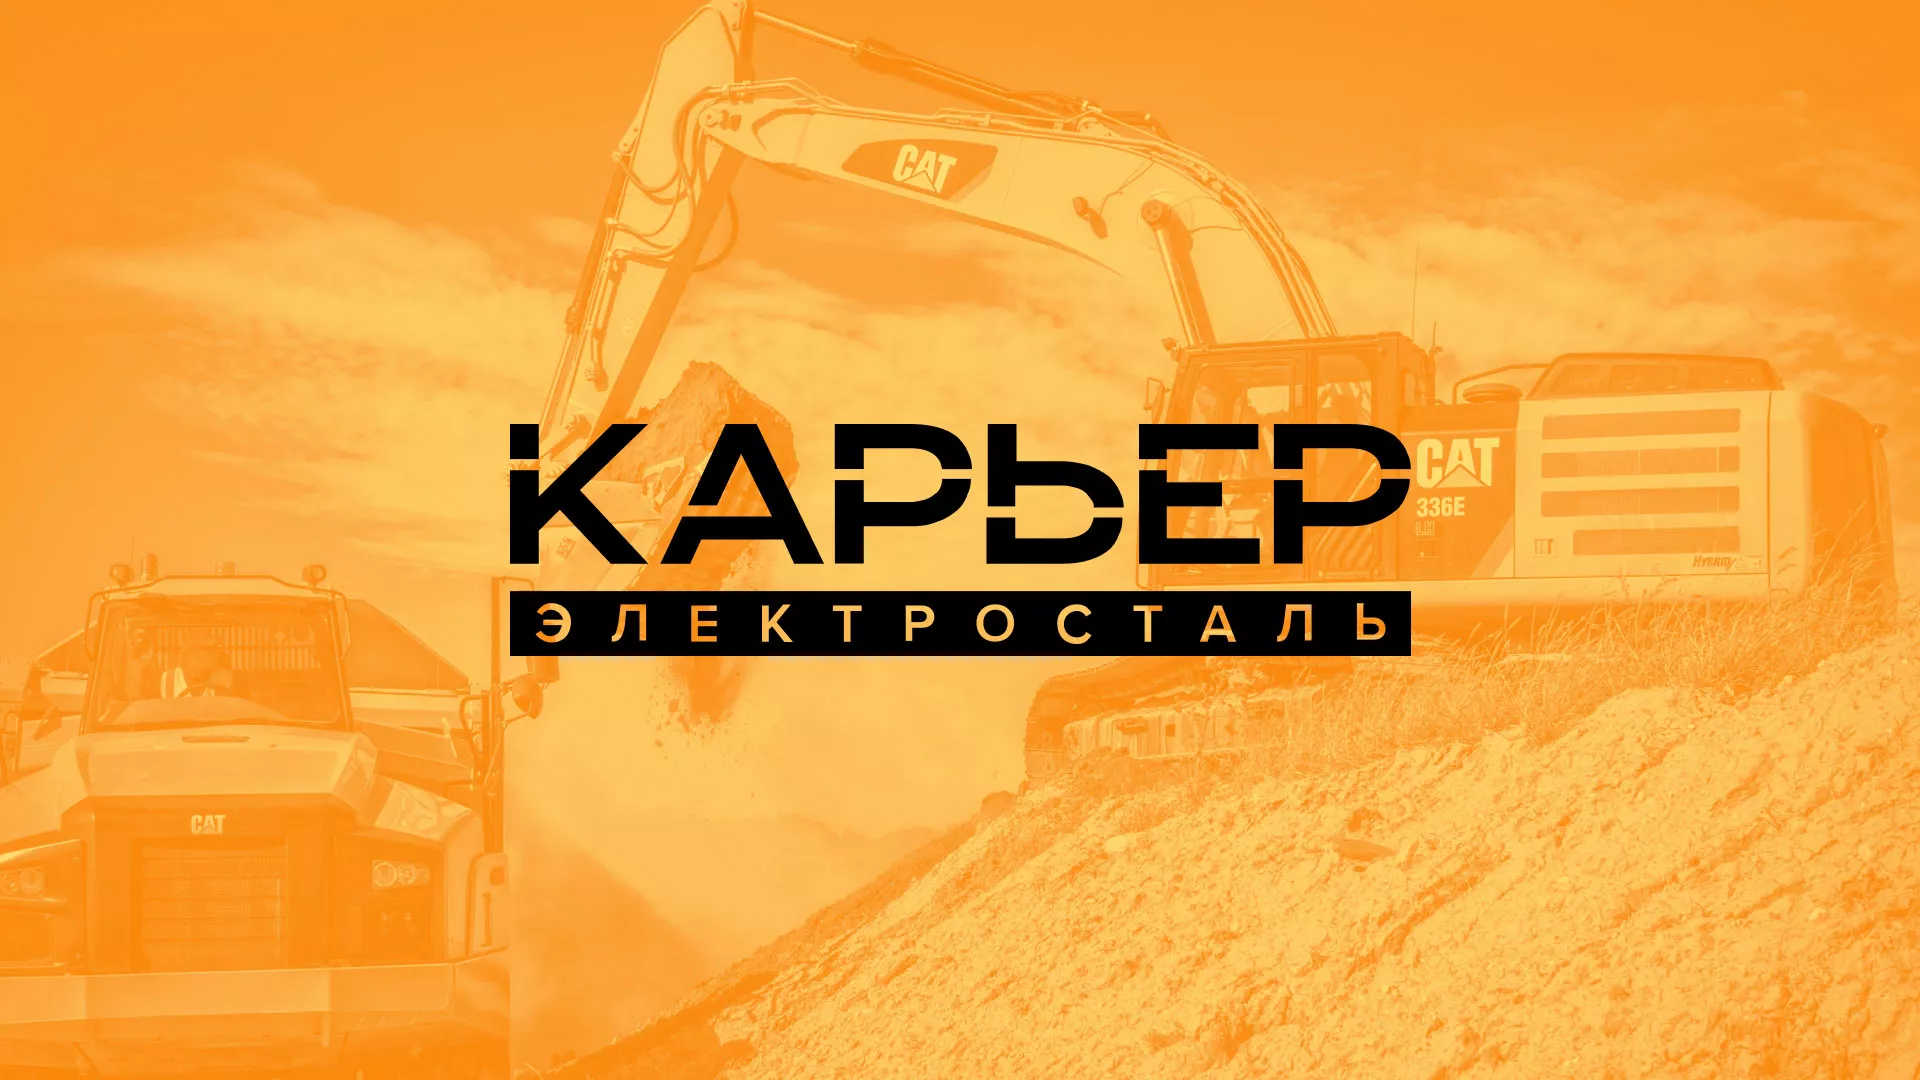 Разработка сайта по продаже нерудных материалов «Карьер» в Николаевске